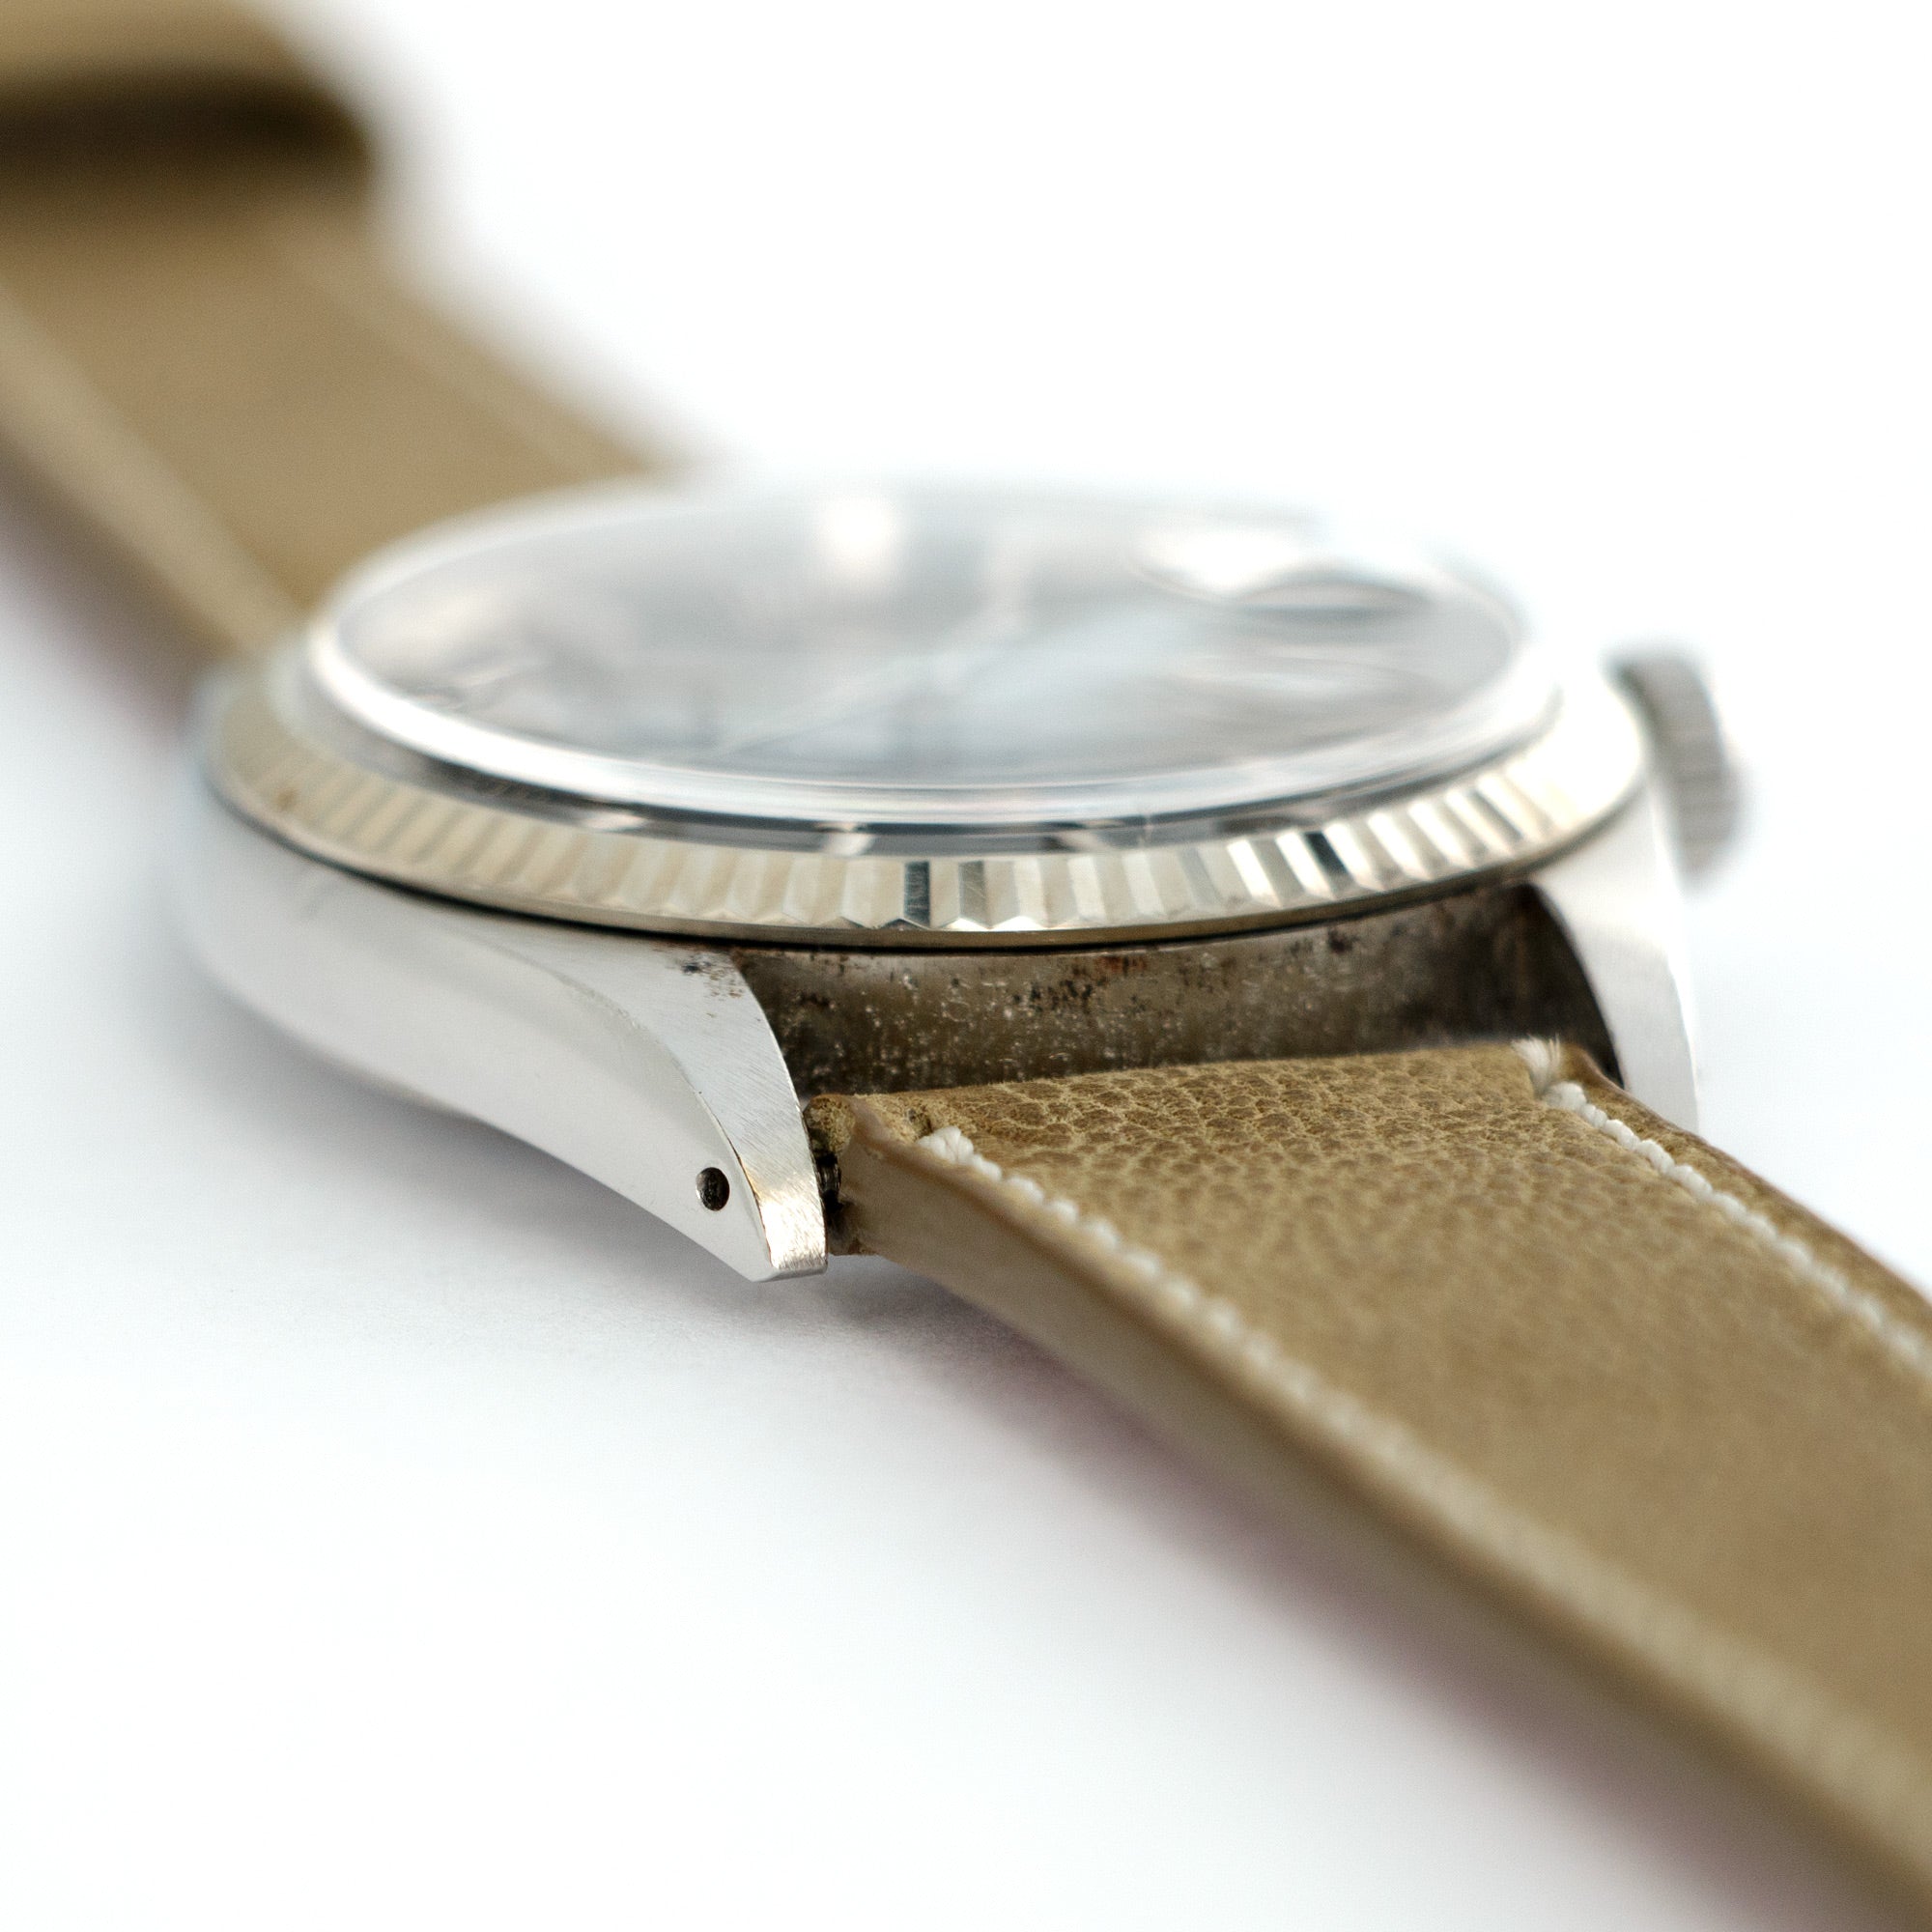 Rolex - Rolex Datejust Black Gilt Watch Ref. 1601 - The Keystone Watches